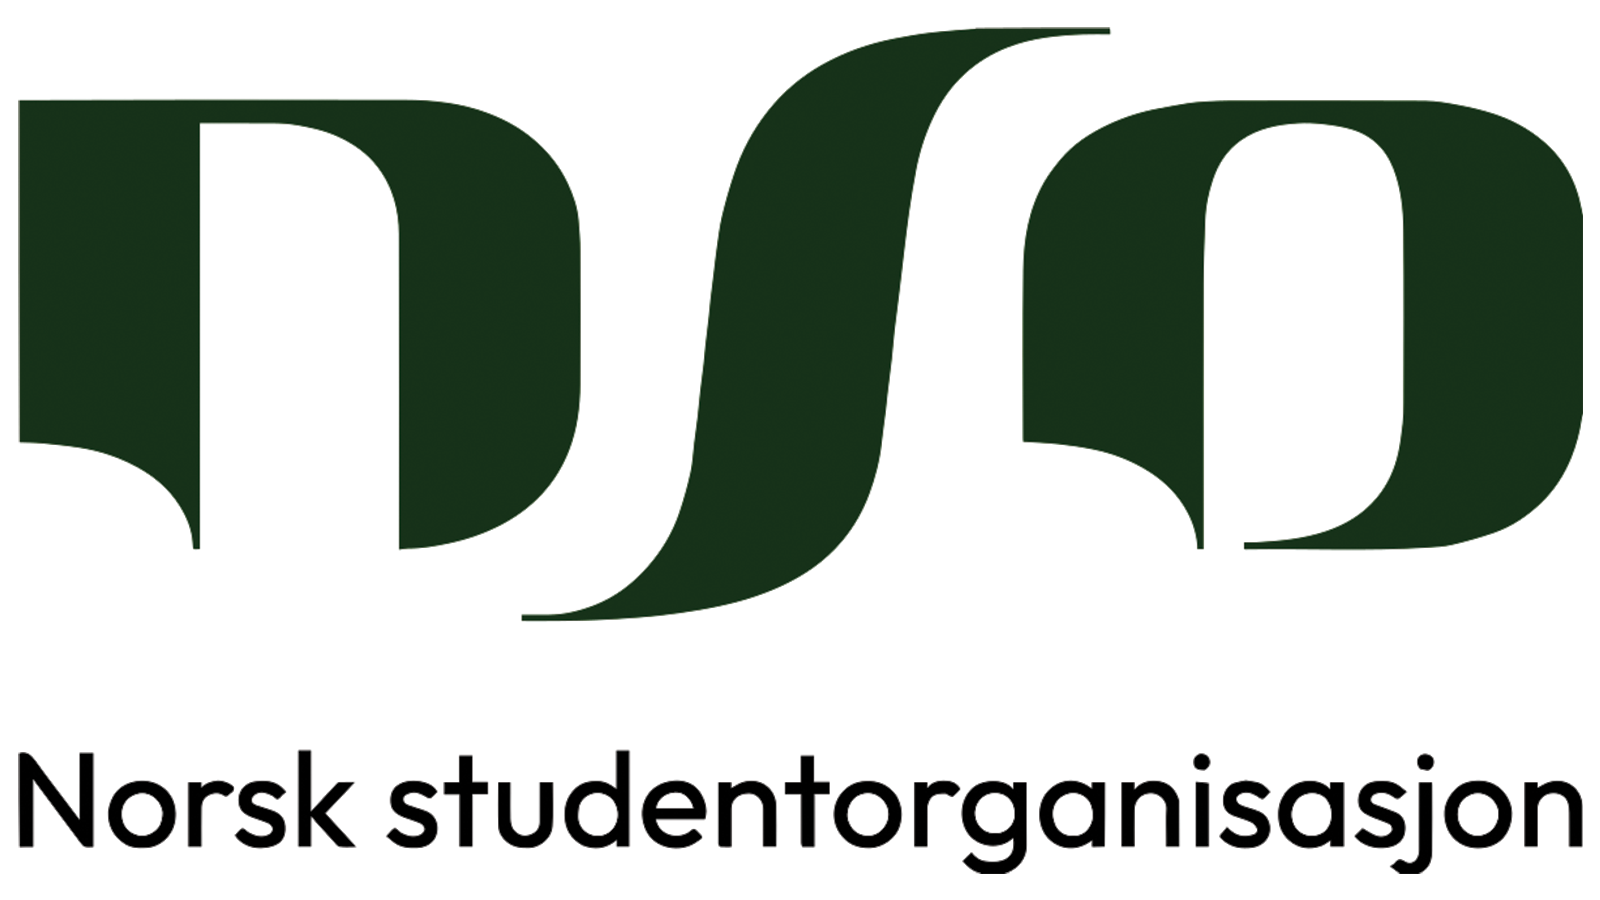 Logo for Norsk studentrogranisasjon